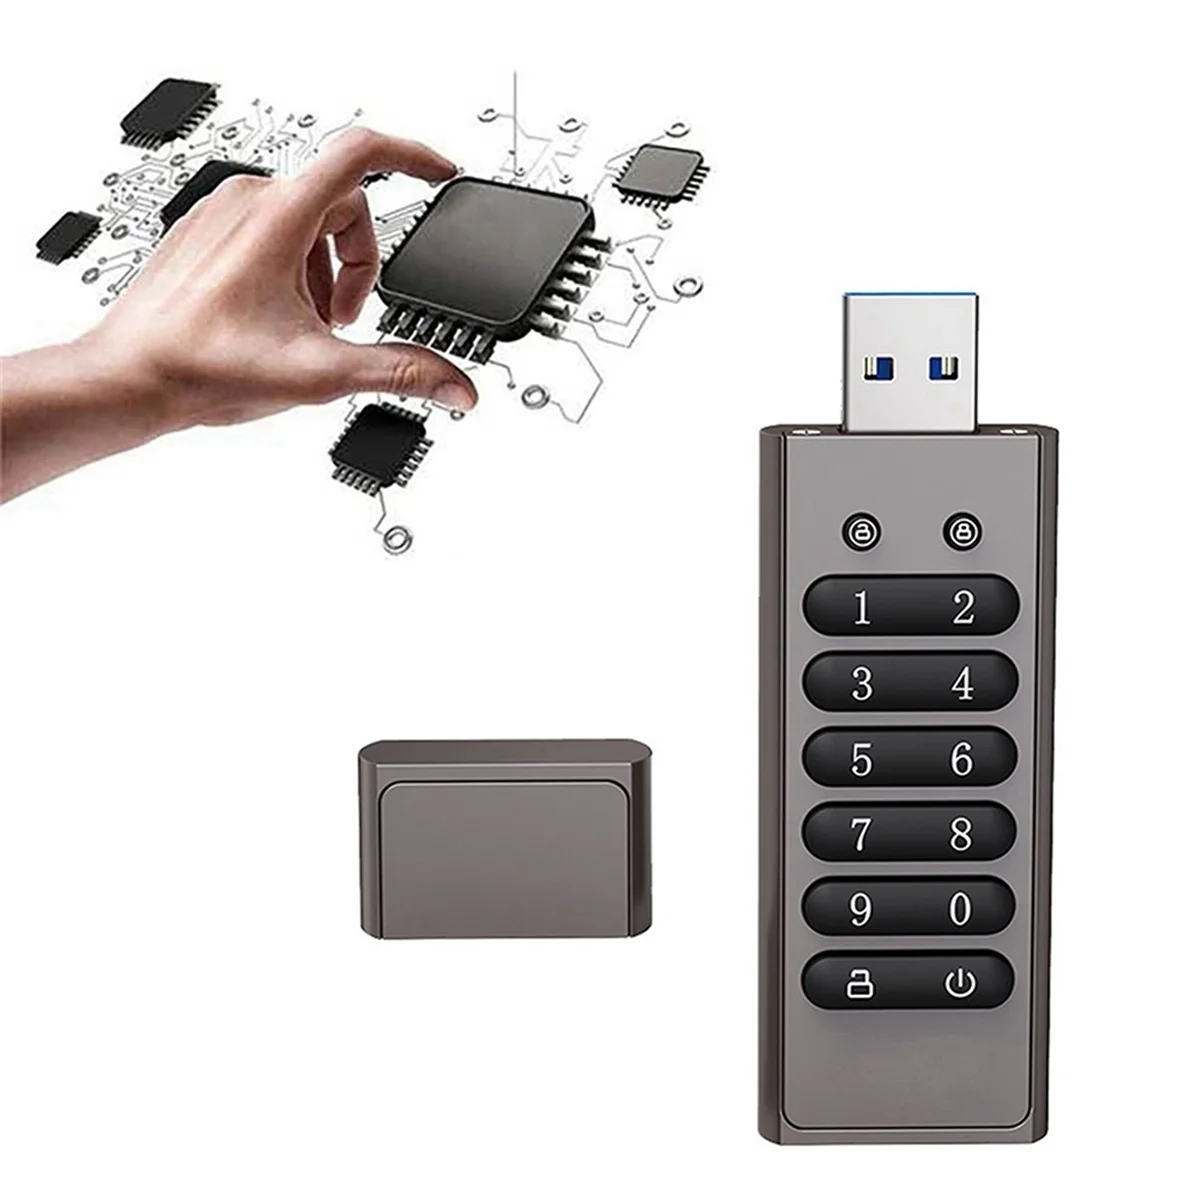 

Флеш-накопитель USB 32 Гб, цифровой шифрованный накопитель, карта памяти, аппаратное шифрование, USB 3,0 U диск, защита конфиденциальности